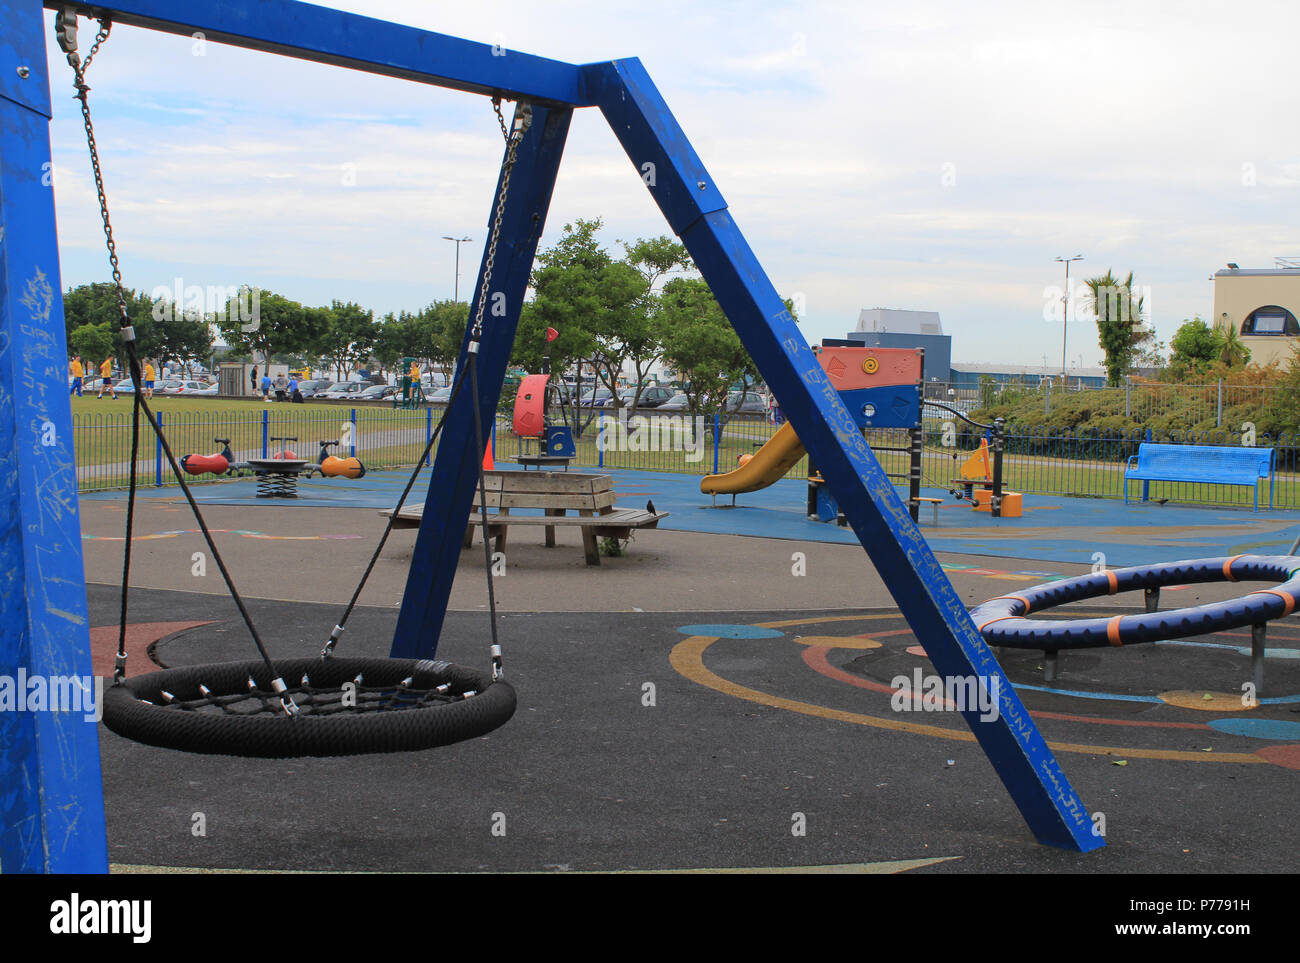 Dublino, Irlanda 26/6/2018. Parco giochi per bambini con altalene.slides etc momentaneamente vuota a Howth. Foto Stock